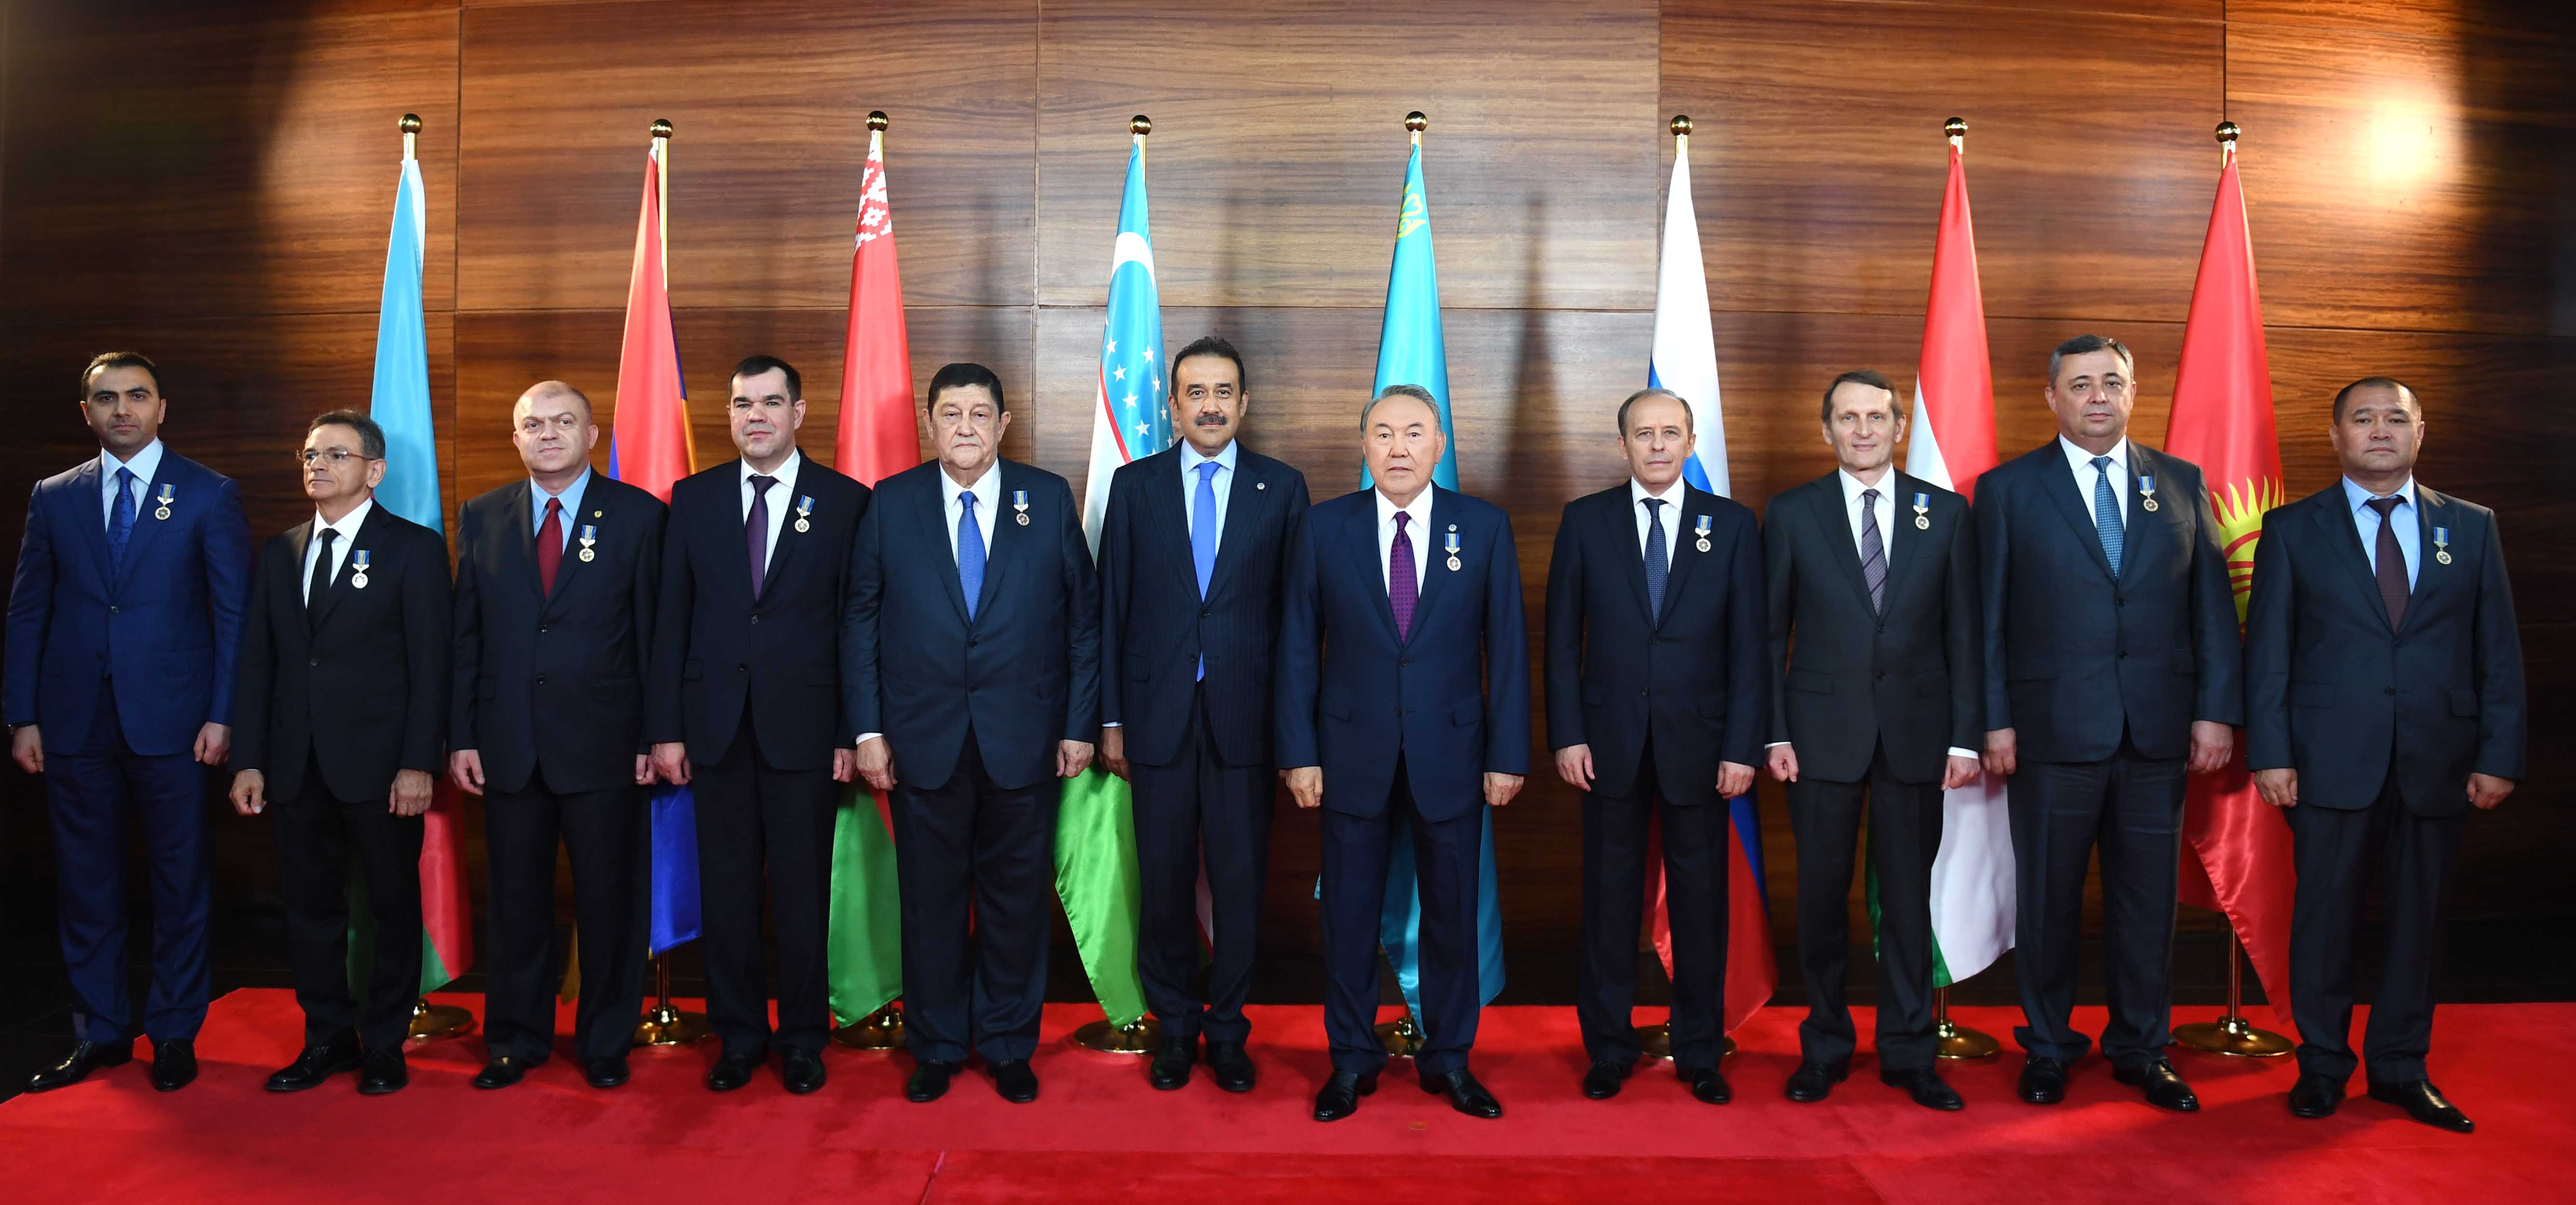 Нурсултан Назарбаев: Уверен, что сотрудники КНБ будут и впредь безупречно служить Родине